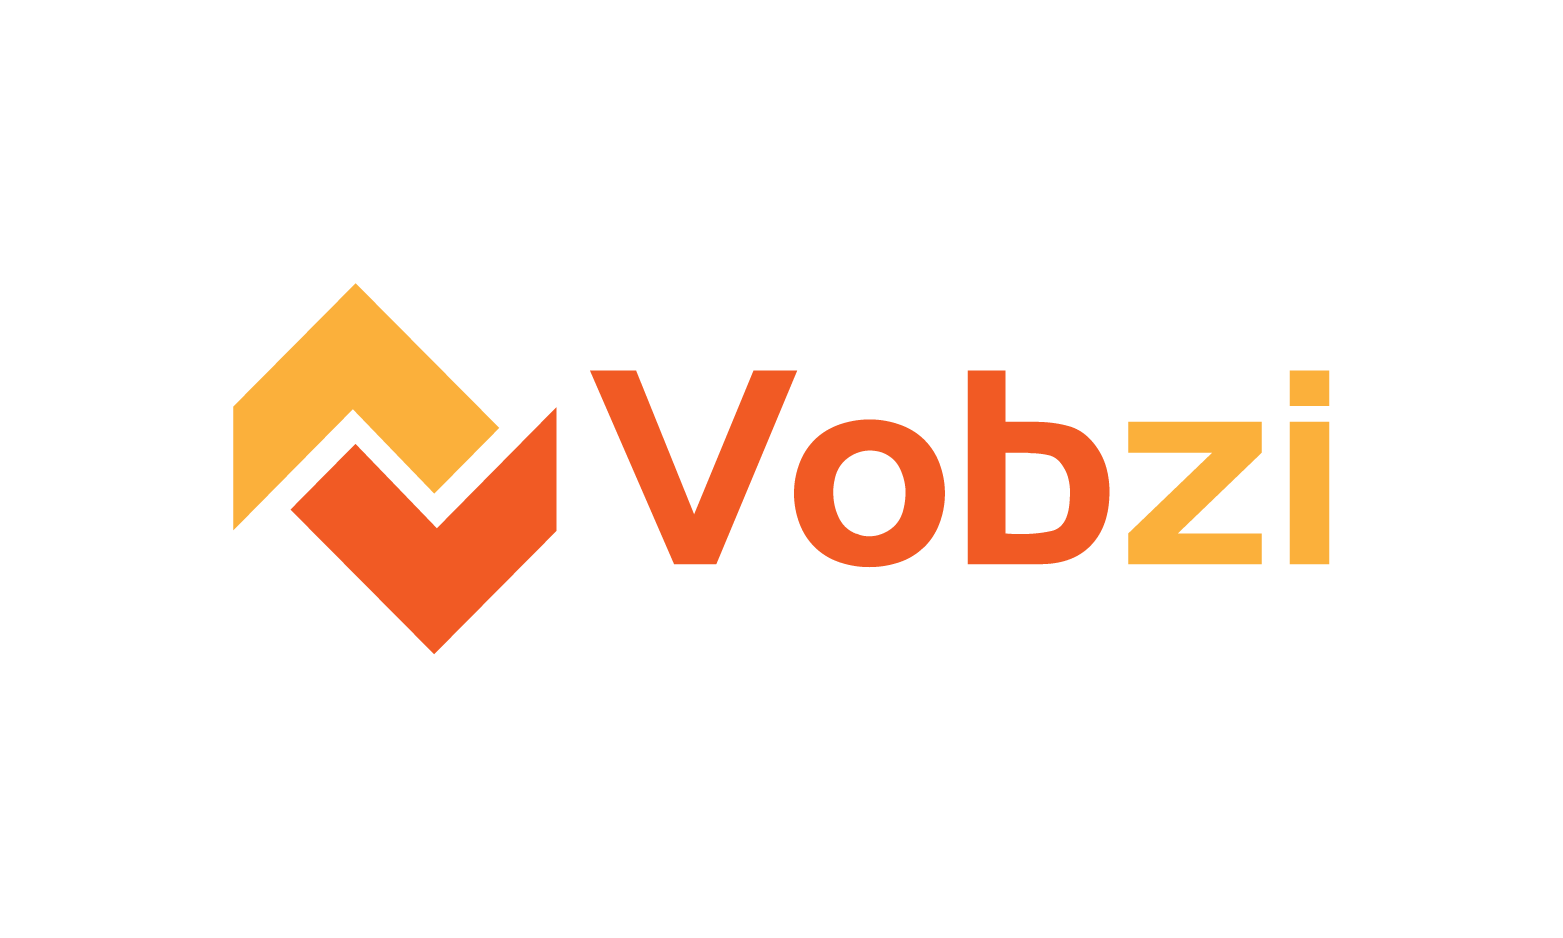 Vobzi.com - Creative brandable domain for sale